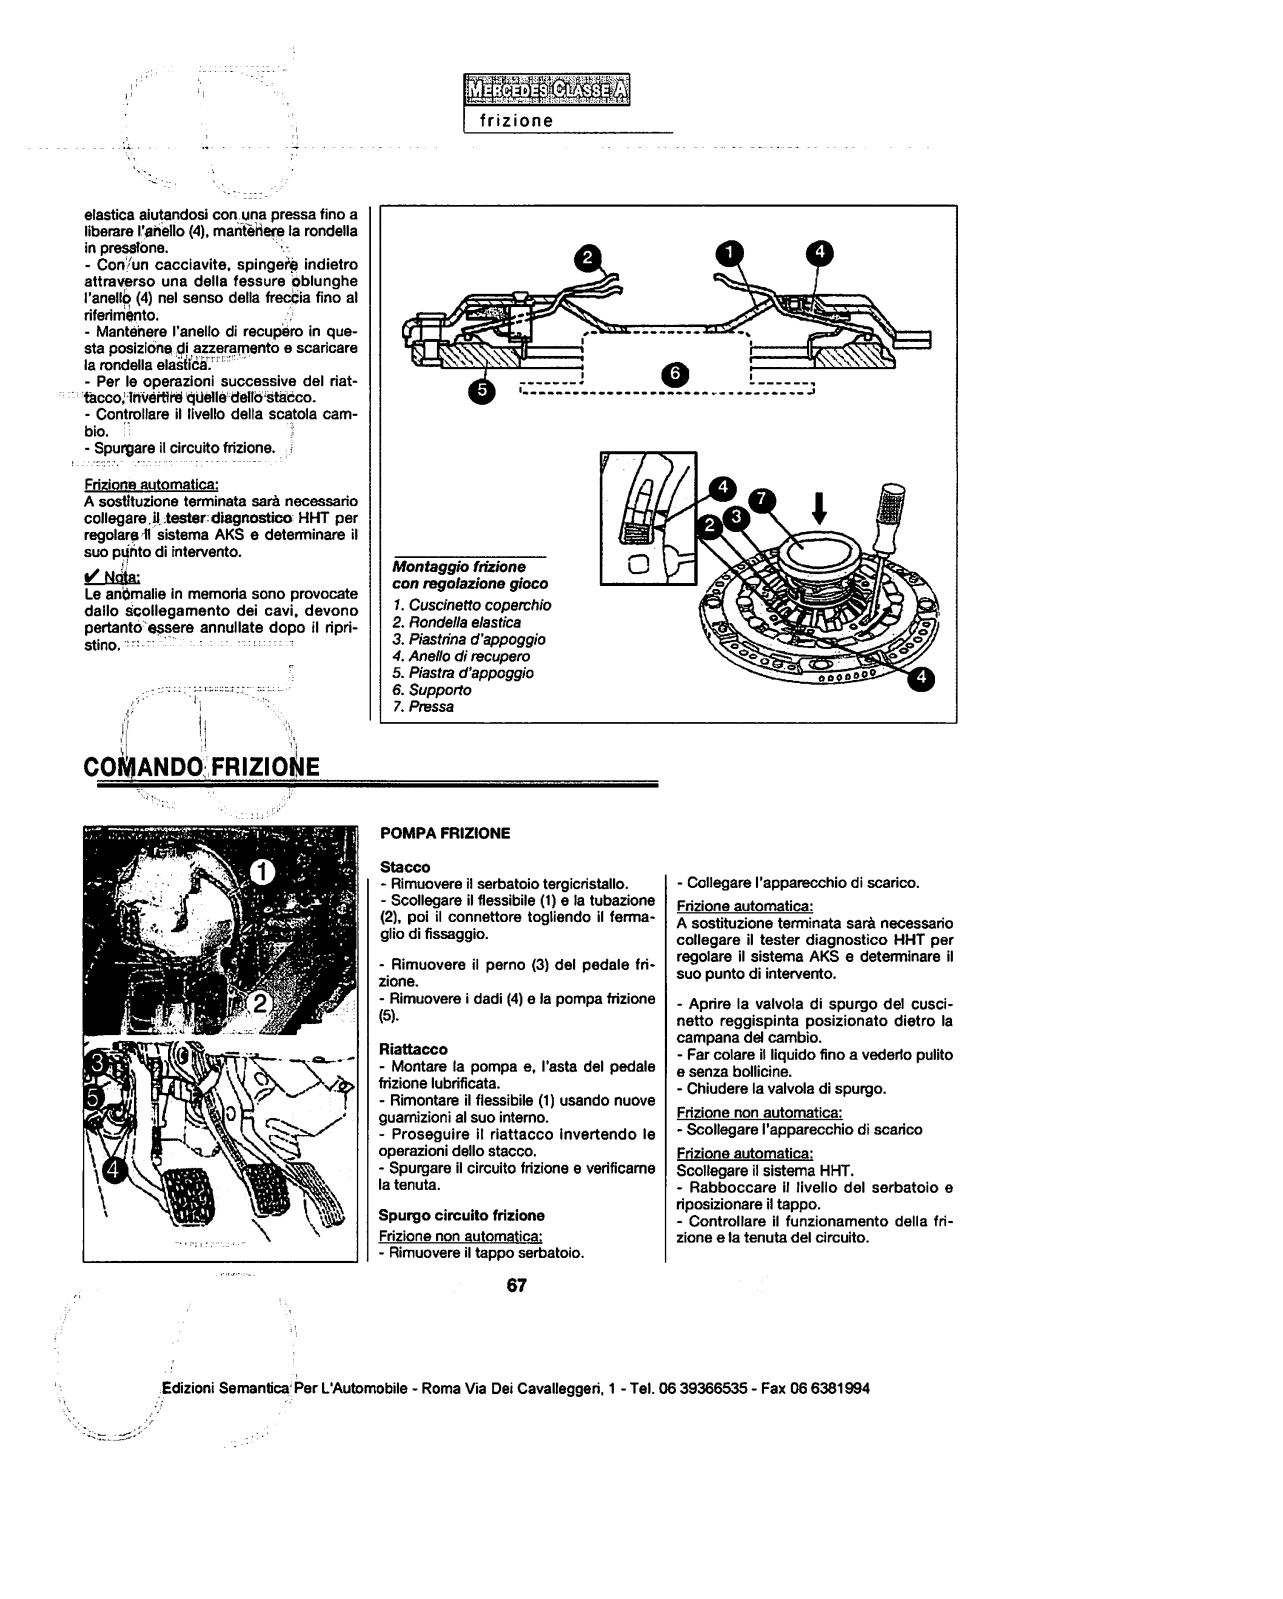 w168 - (W168): Manual técnico - tudo sobre - 1997 a 2004 - italiano Wahz5x